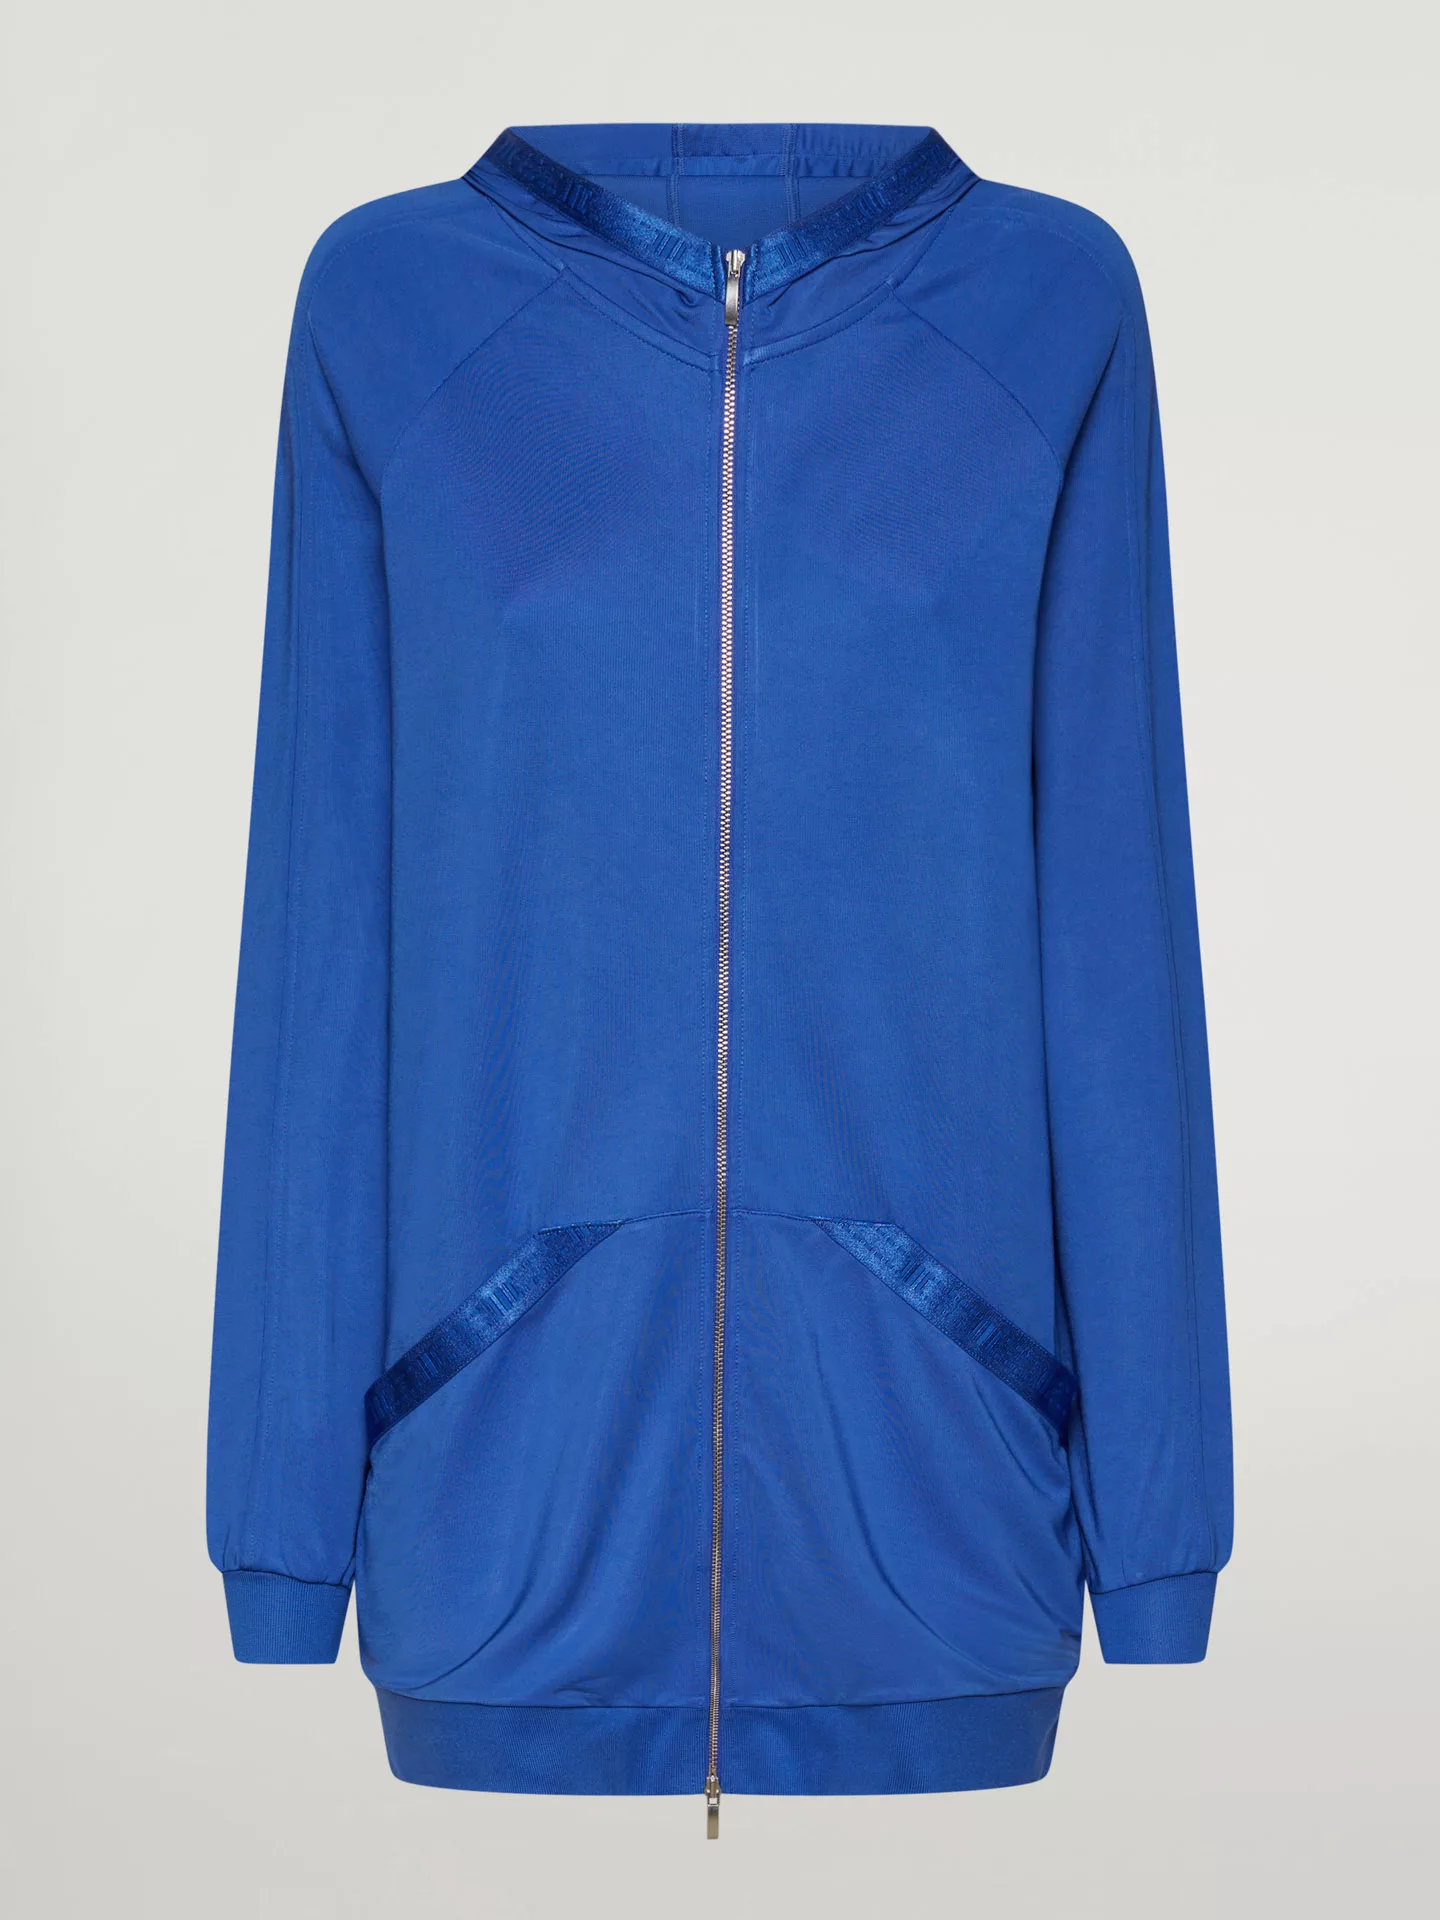 Wolford - Full zip Sweater Jacket, Frau, dazzling blue, Größe: S günstig online kaufen